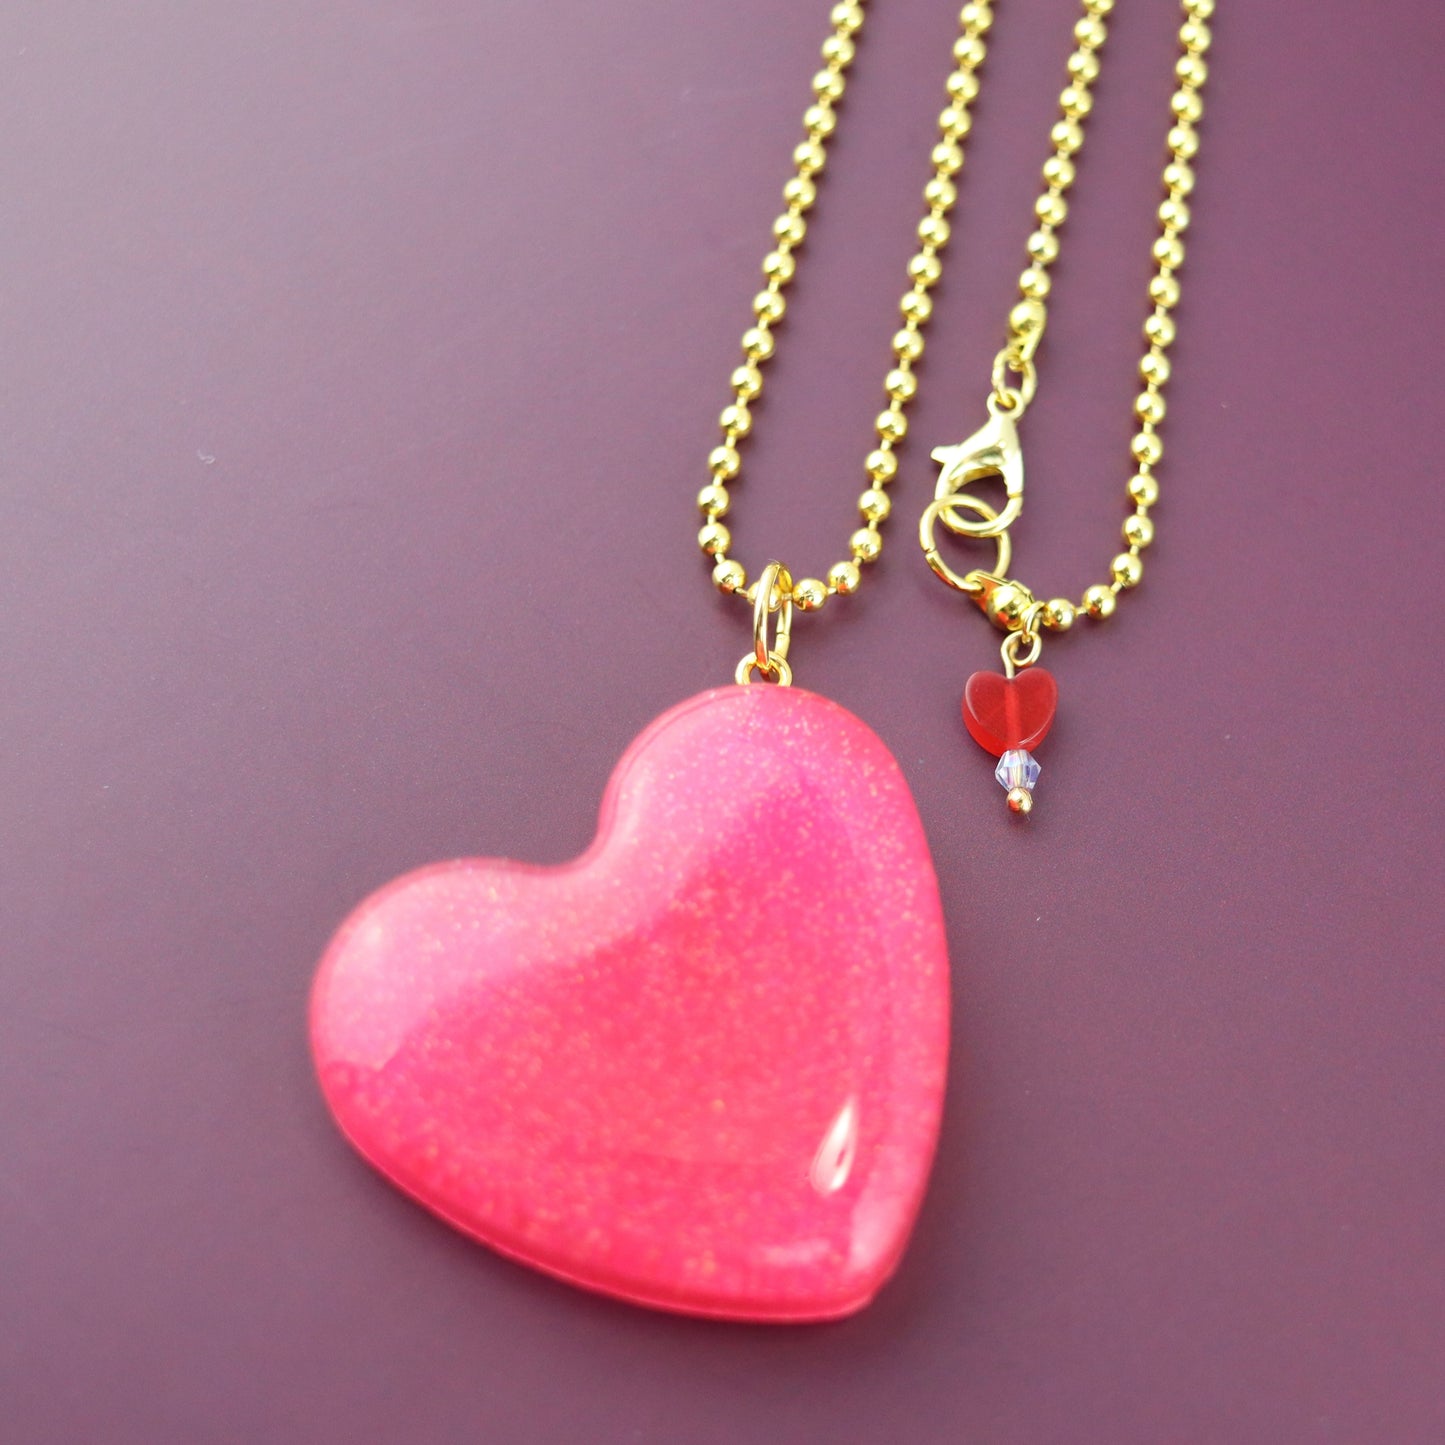 OG Heart Glitter Necklace – Pink Sparkle with Gold Hardware NGH-1006